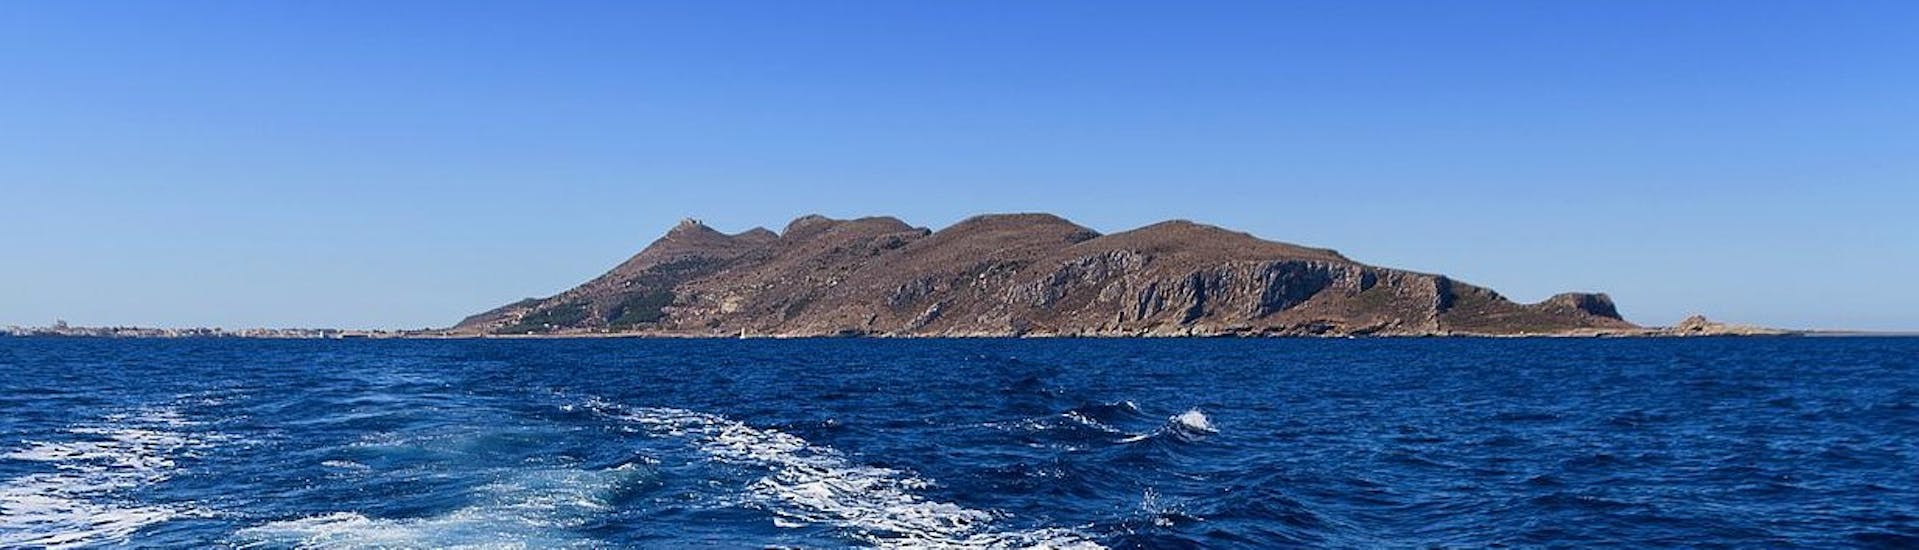 Impresionantes vistas del archipiélago de las Egadi durante una excursión en barco desde Castellammare del Golfo a Favignana y Levanzo con Egadi Navigazione.